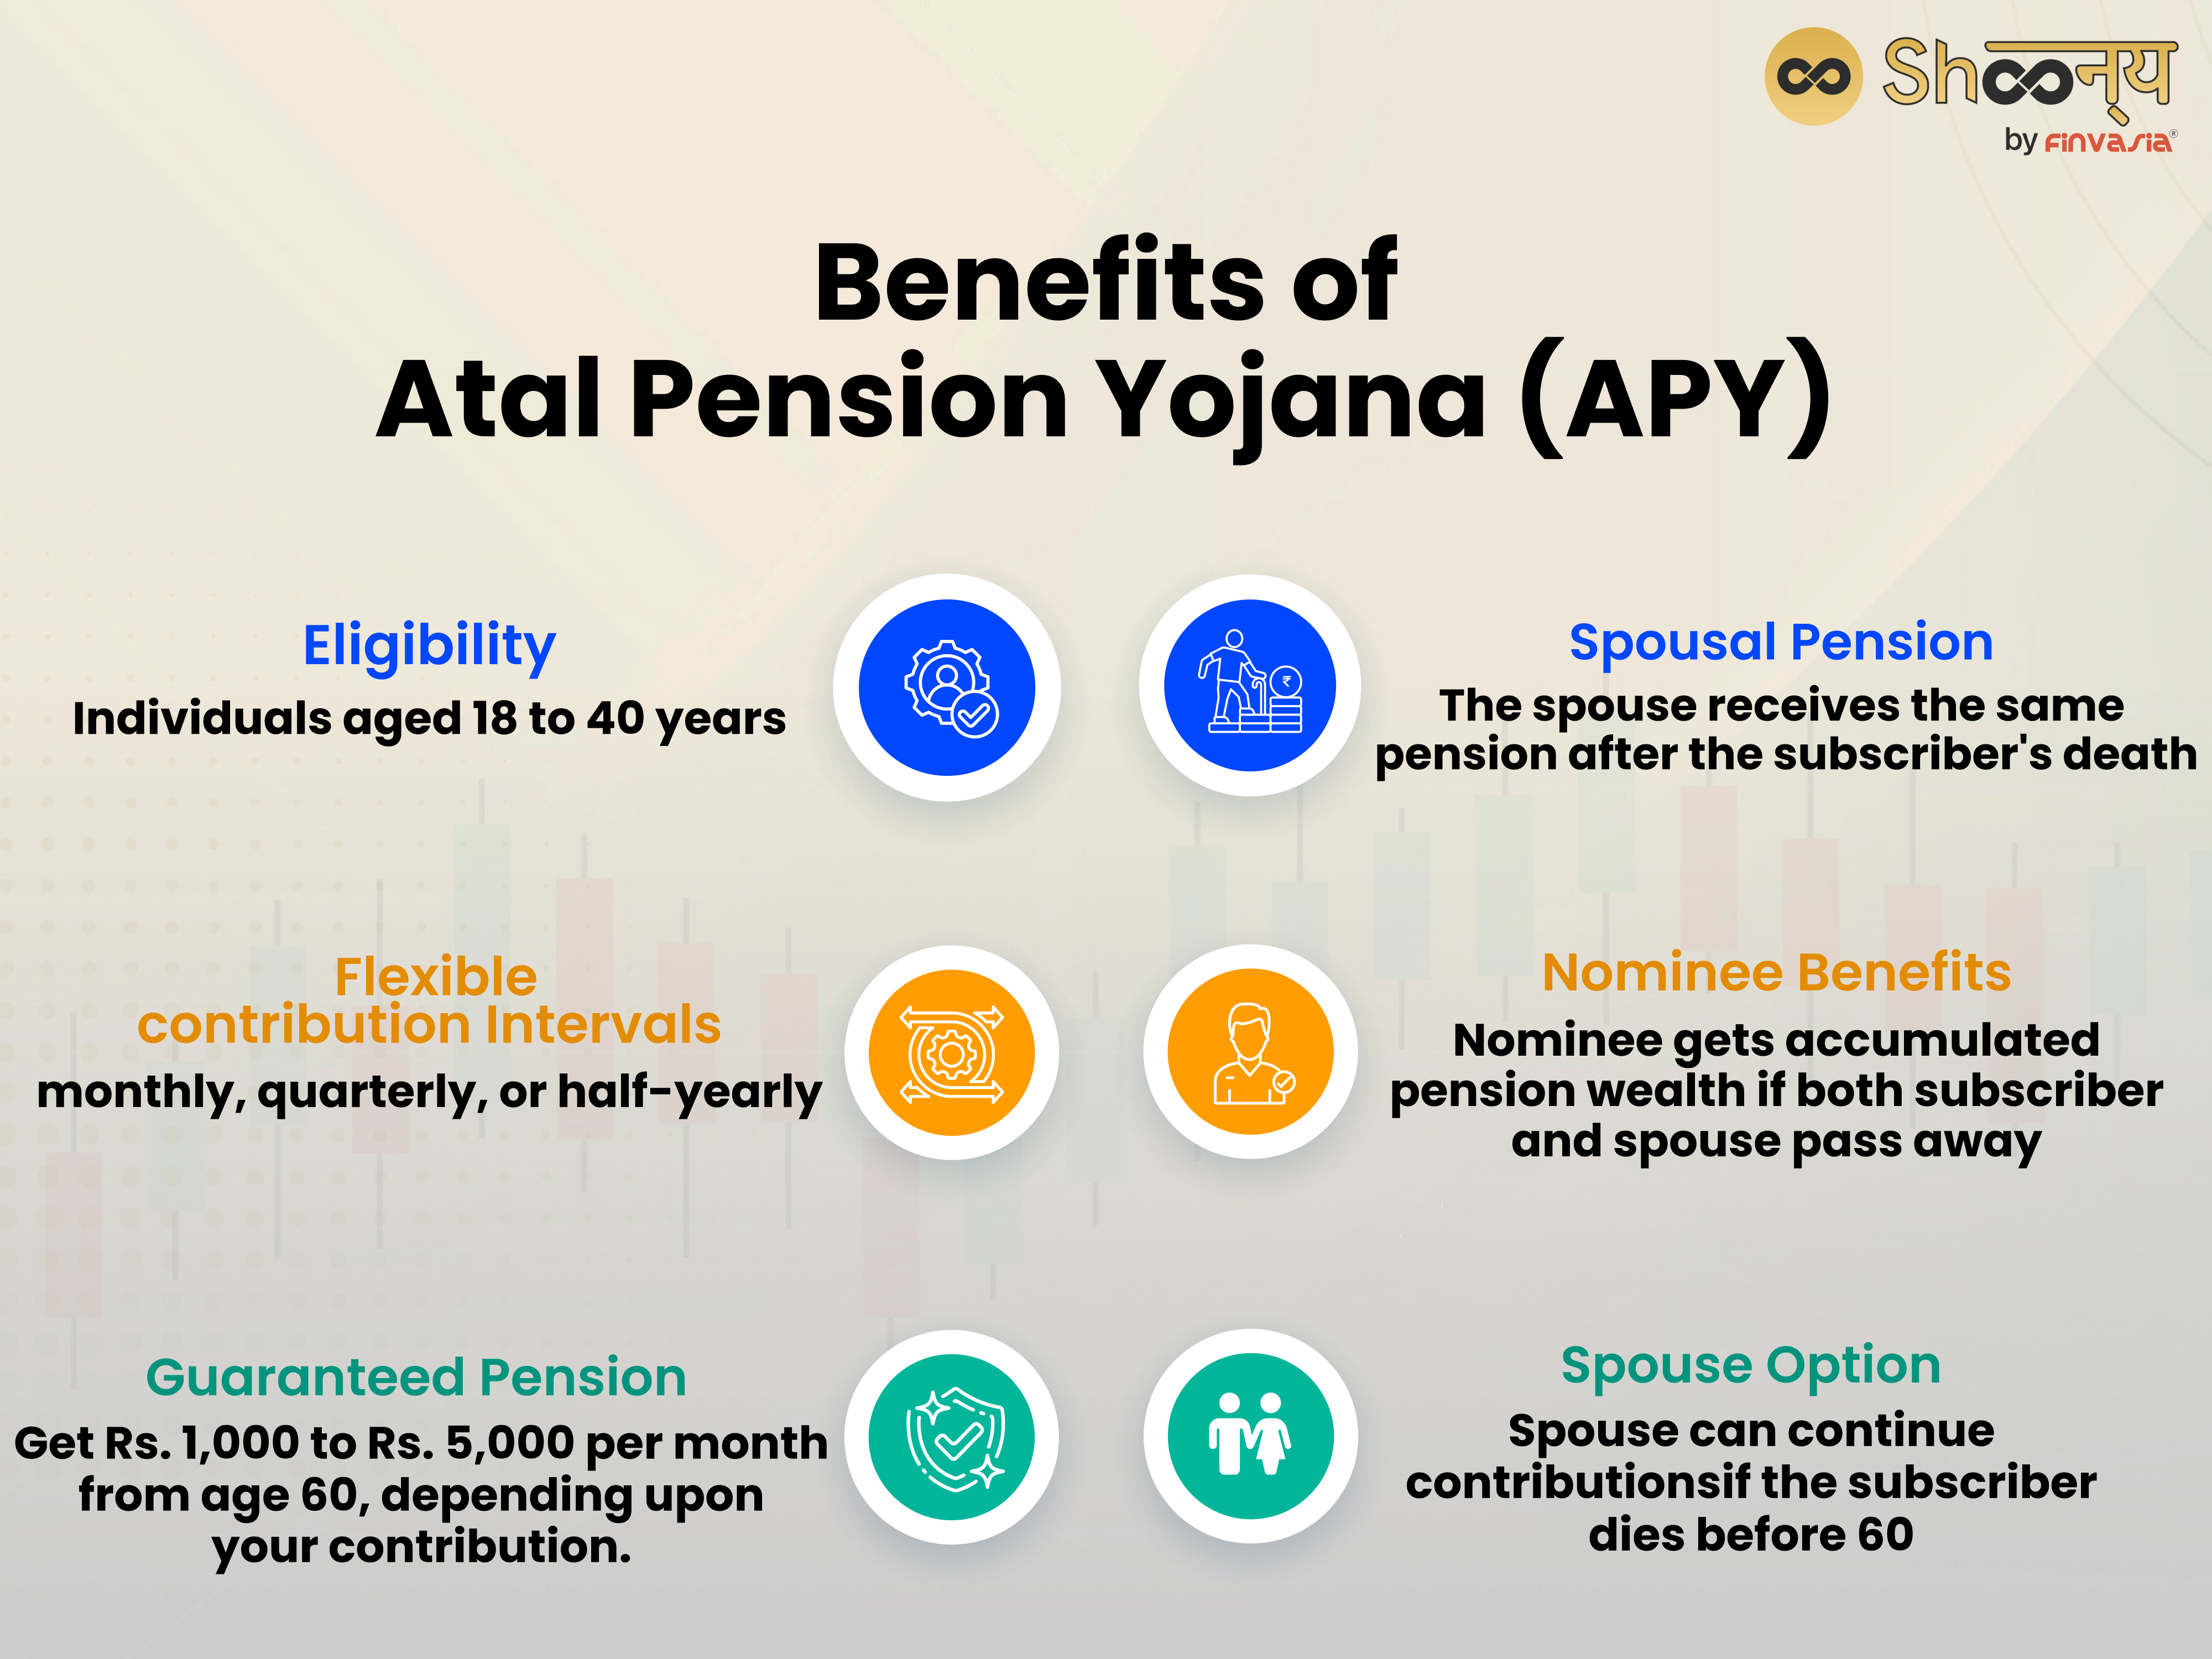 Benefits of Atal Pension Yojana